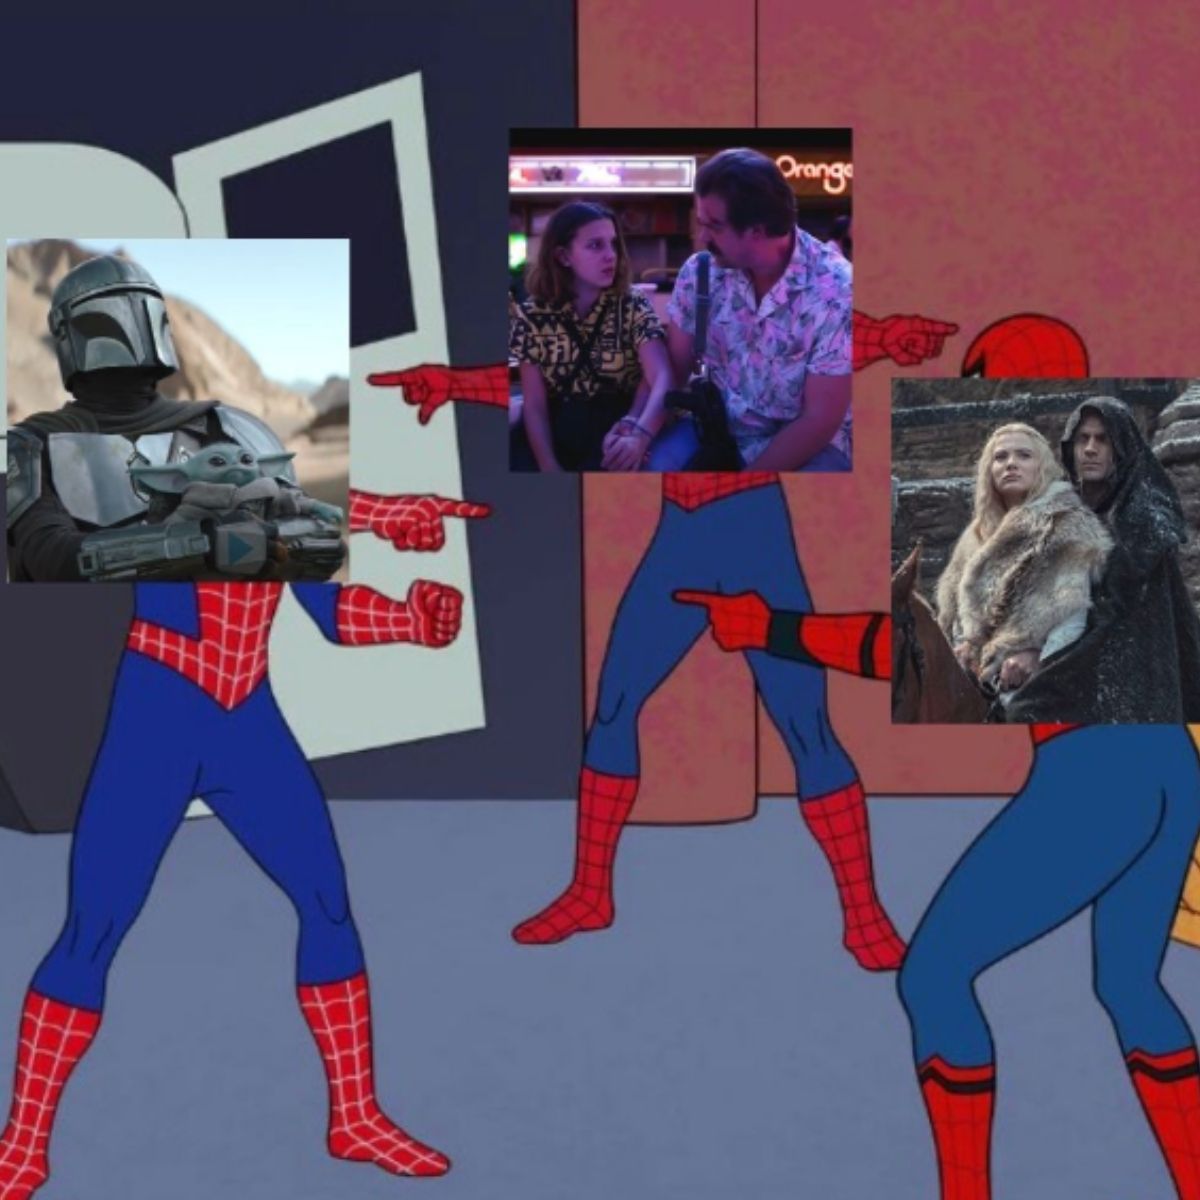 Une image des trois Spider-Men pointant l'un vers l'autre au format meme